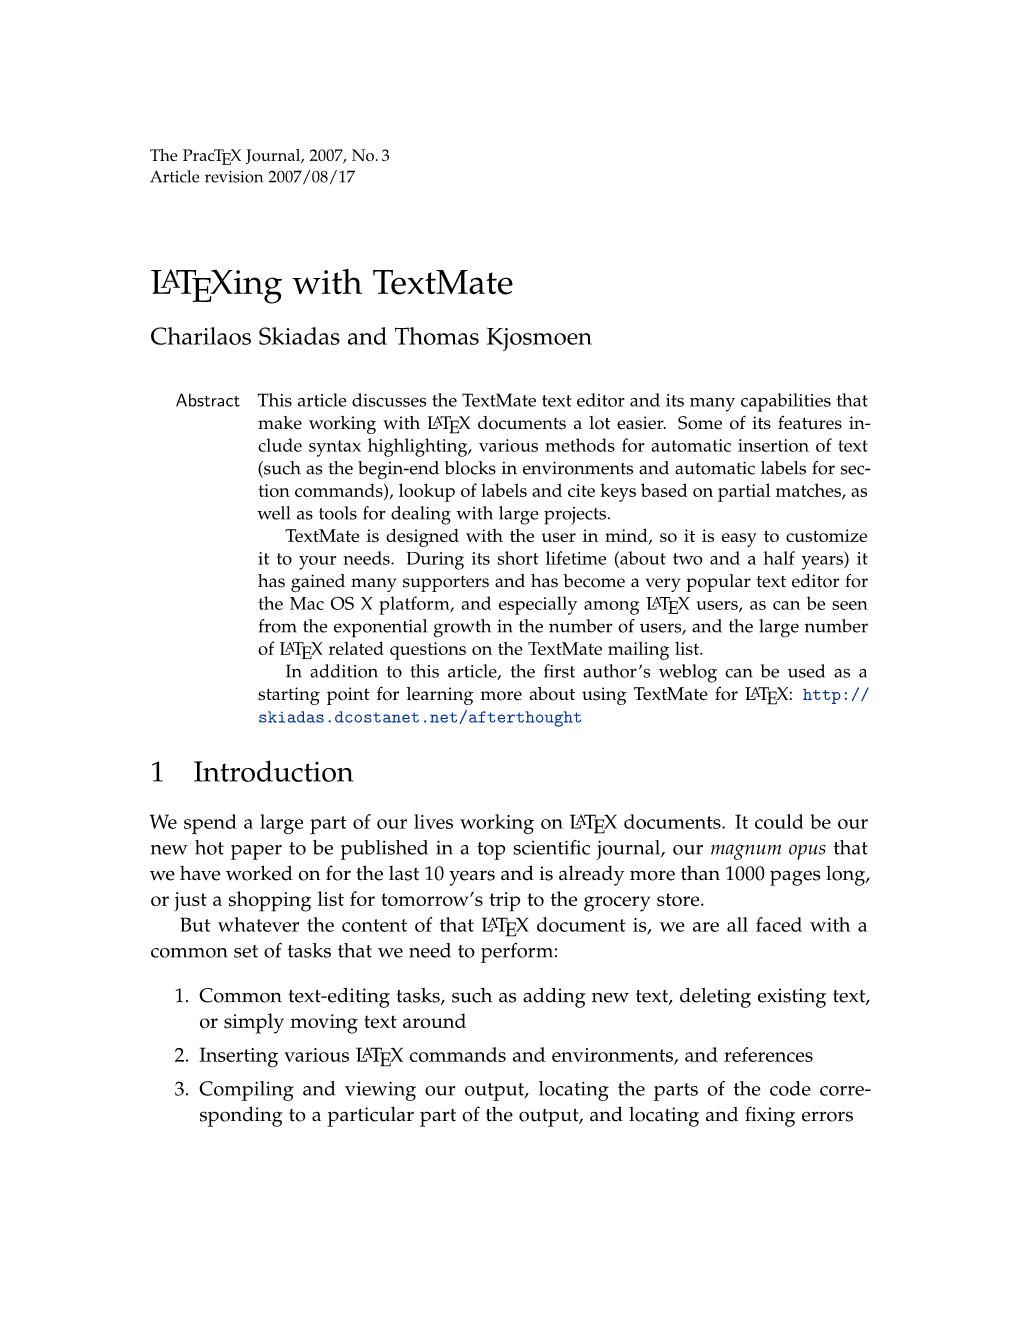 Latexing with Textmate Charilaos Skiadas and Thomas Kjosmoen